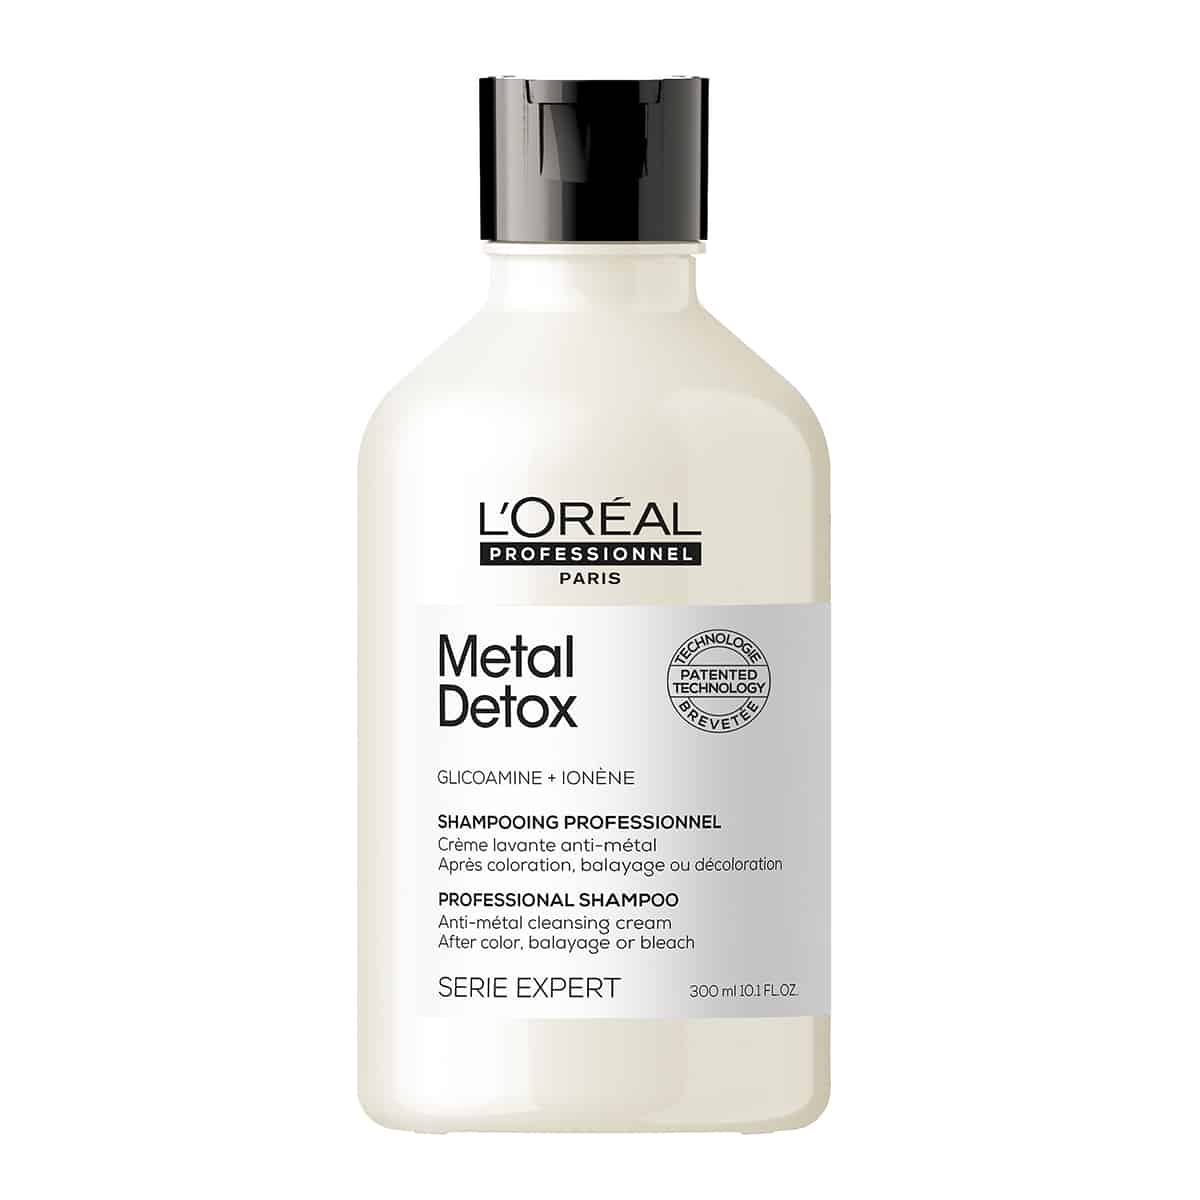 L'Oreal Metal Detox Shampoo - 300ml